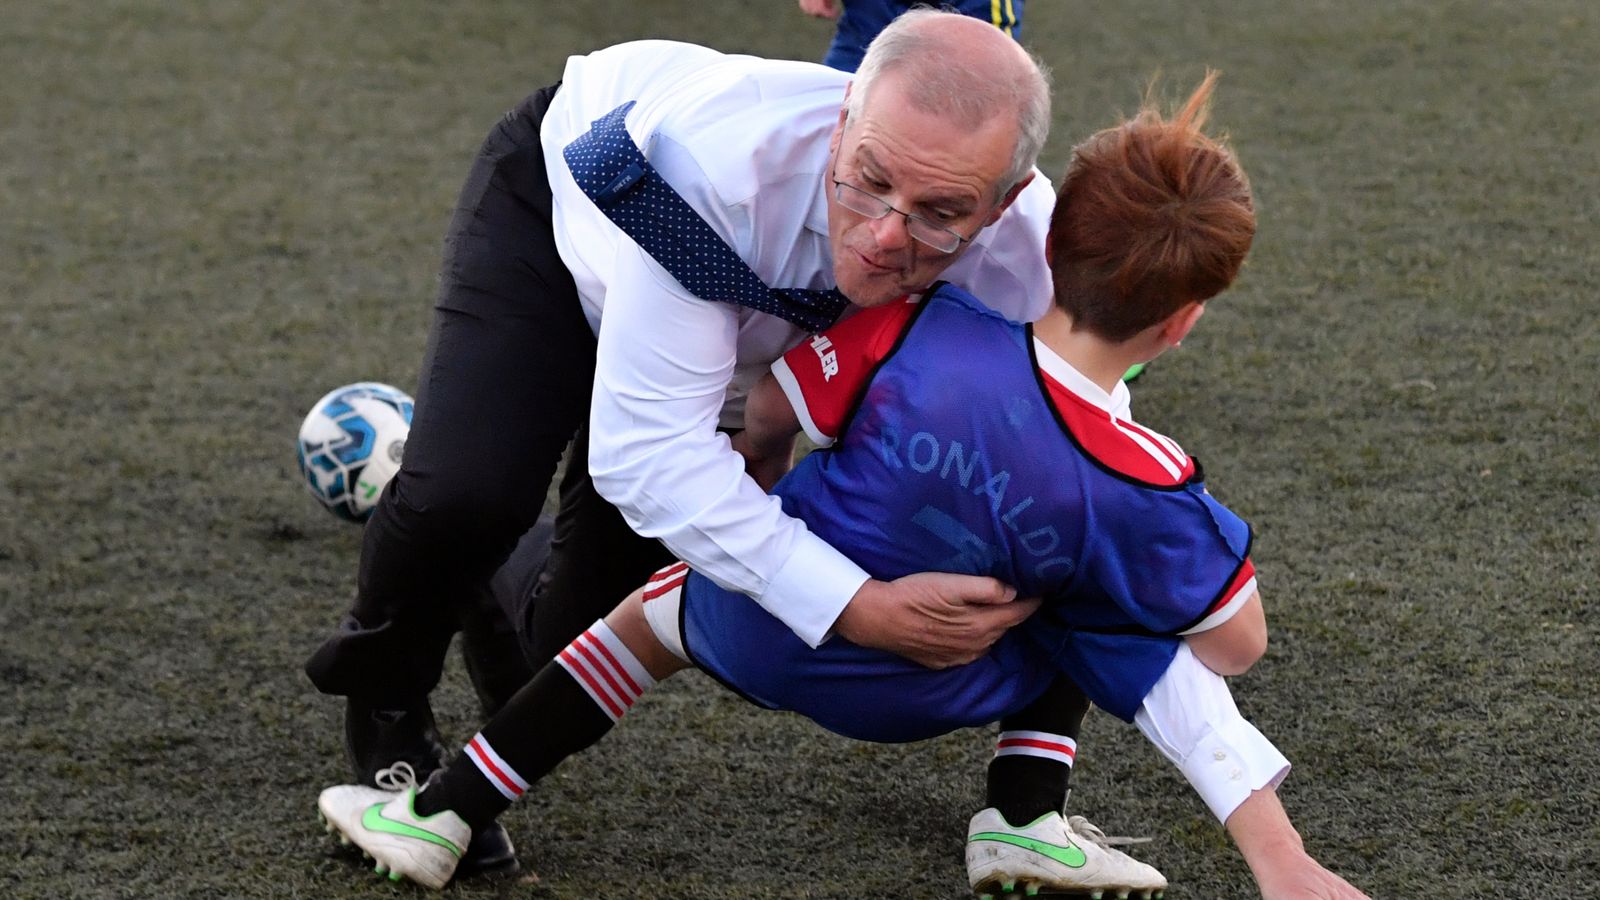 Le Premier ministre australien Scott Morrison tacle accidentellement un garçon lors d’un match de football lors d’un événement électoral |  Nouvelles du monde